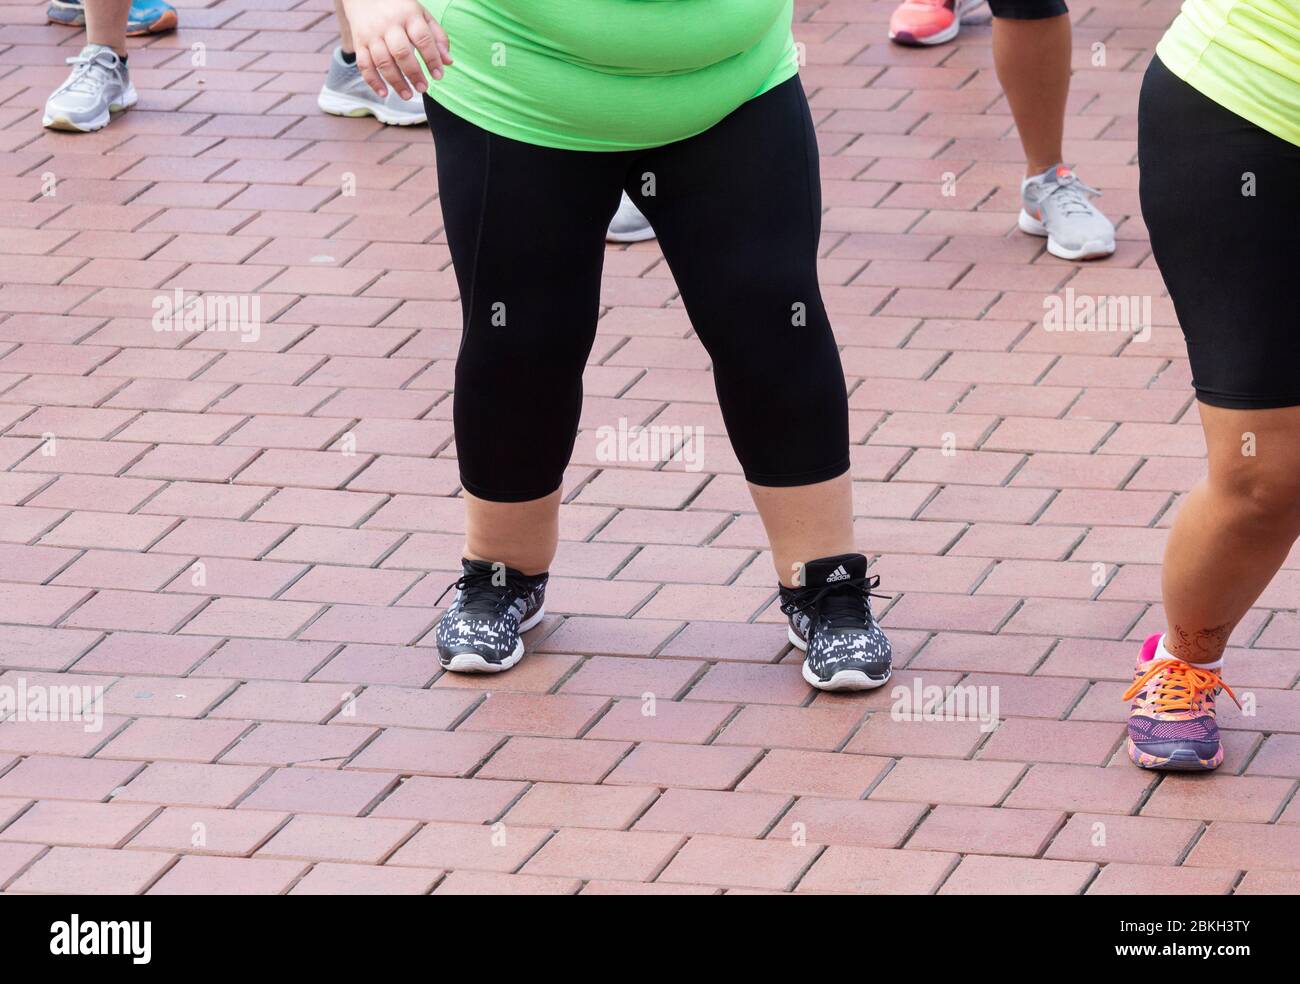 Übergewichtige Frau, die an Zumba-Klasse teilnimmt. Stockfoto